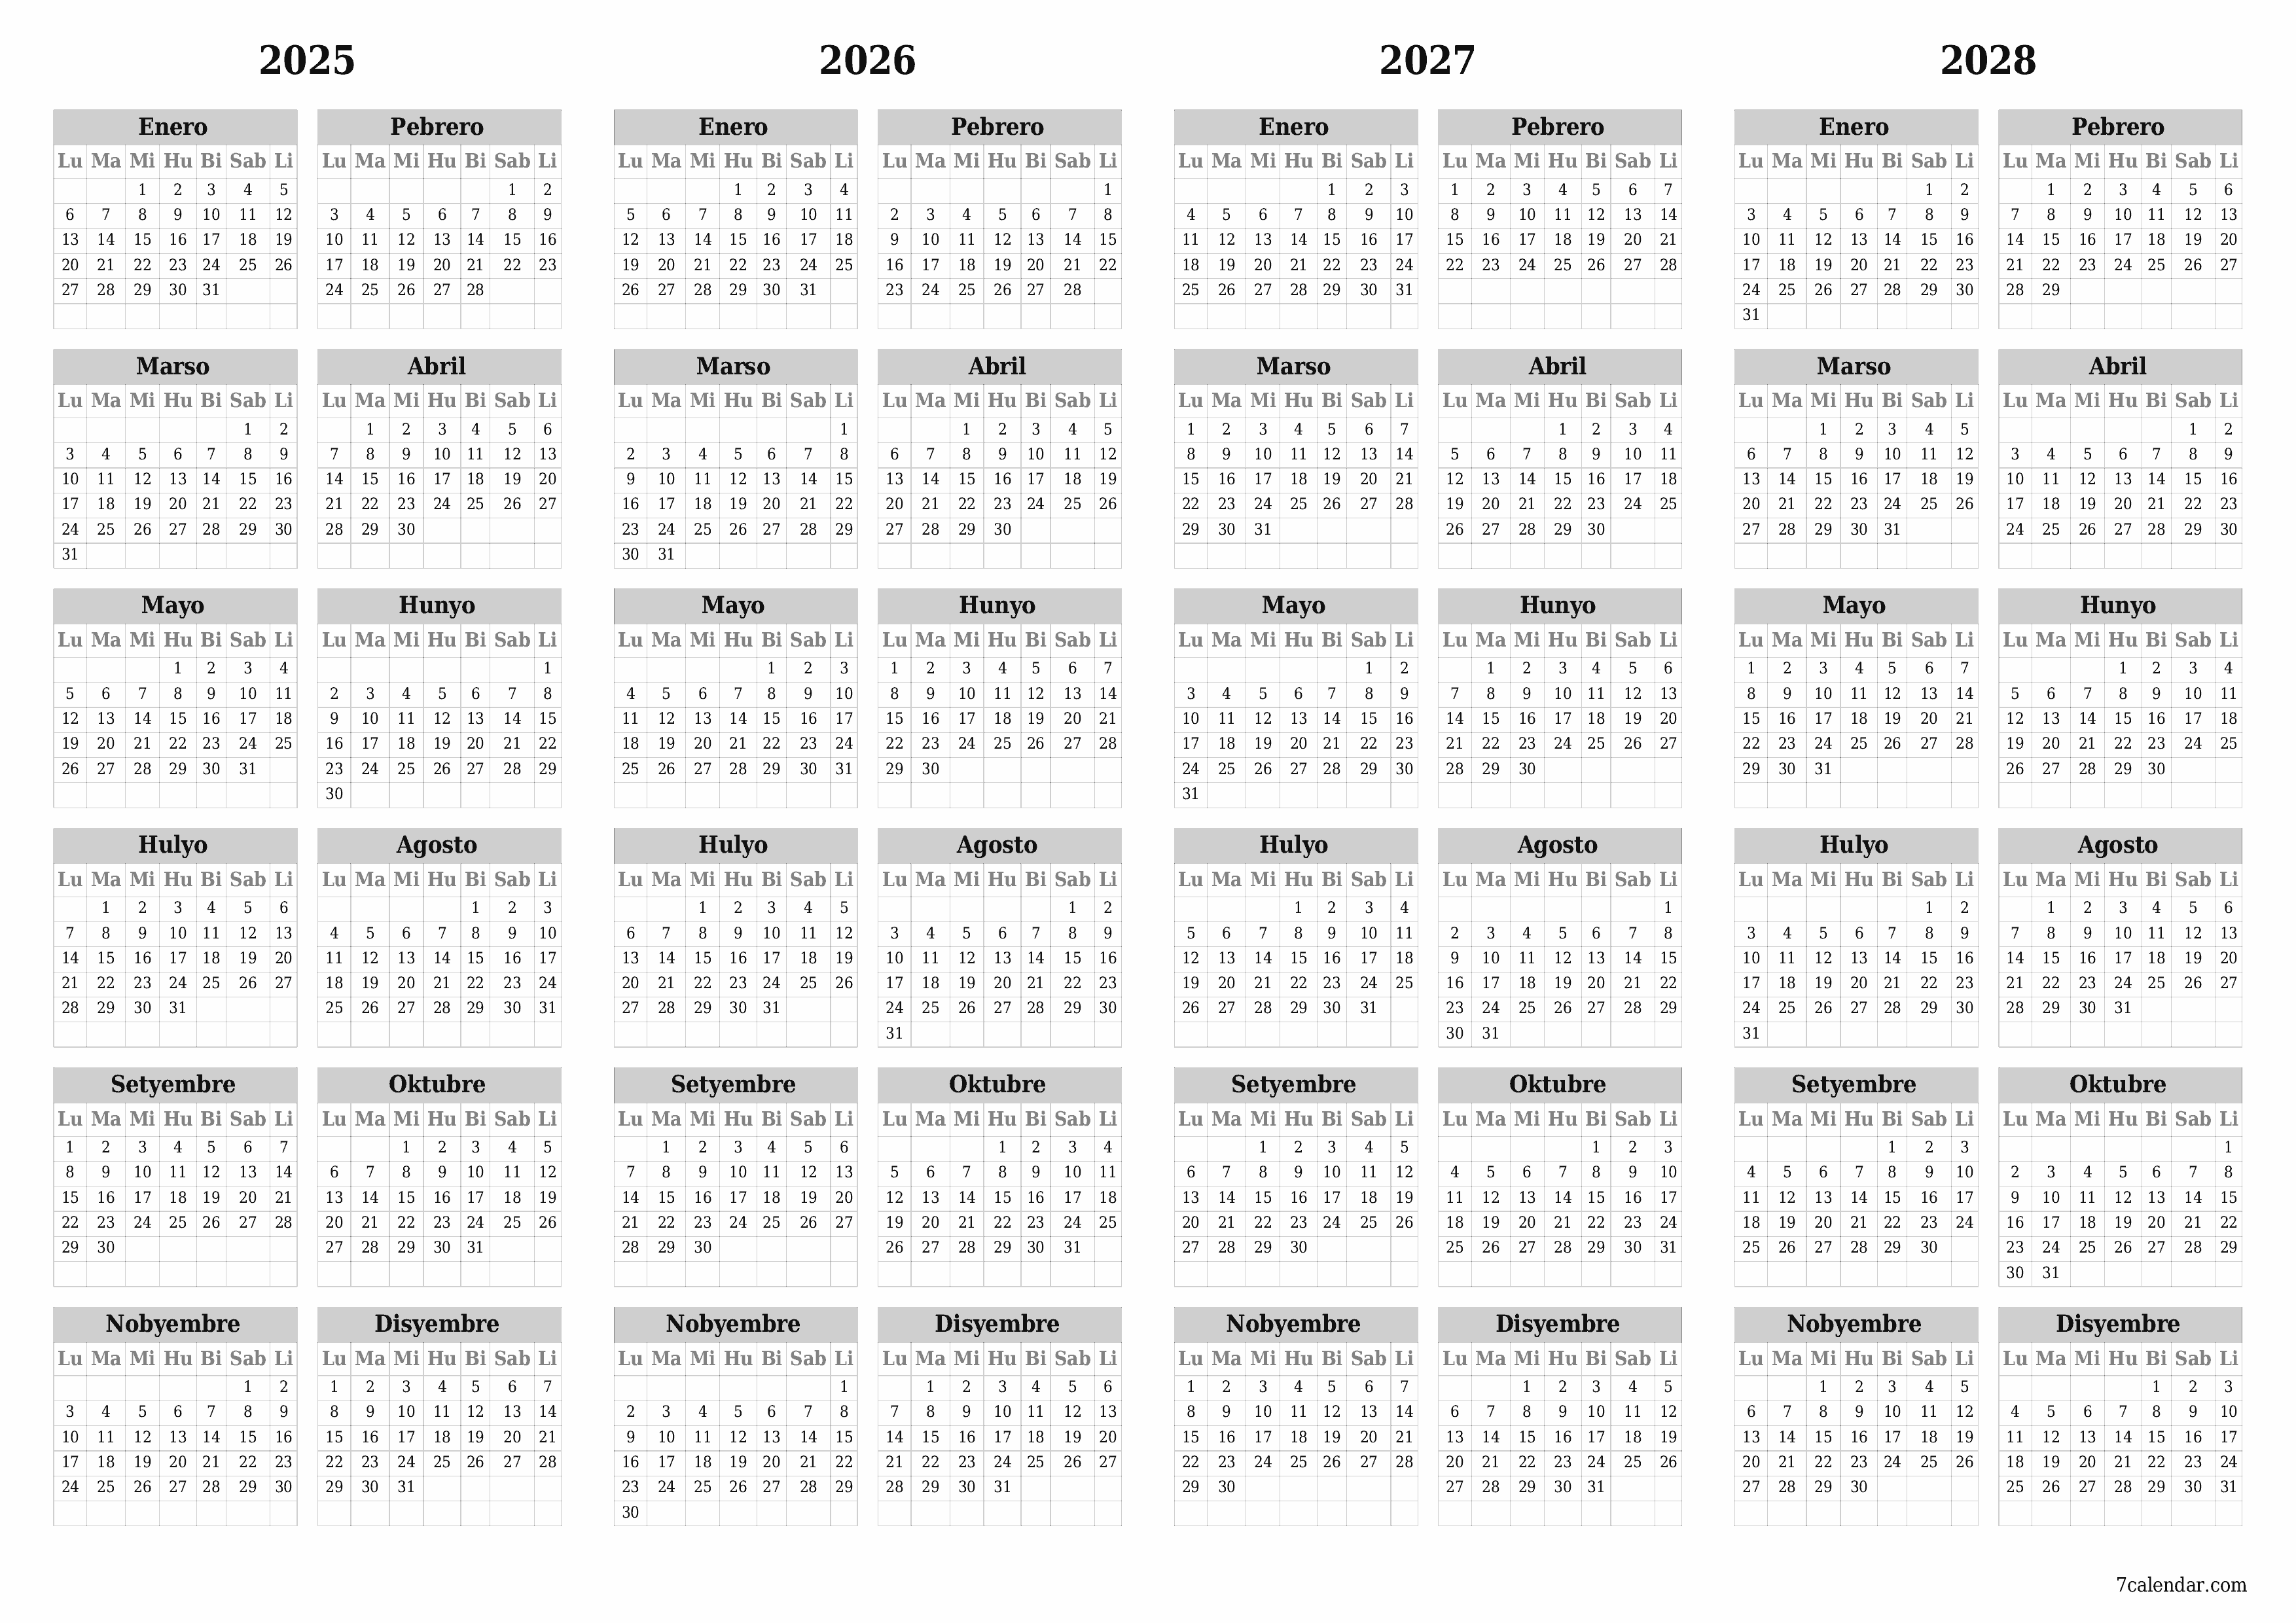 napi-print na sa dingding template ng libreng pahalang Taunan kalendaryo Hunyo (Hun) 2025